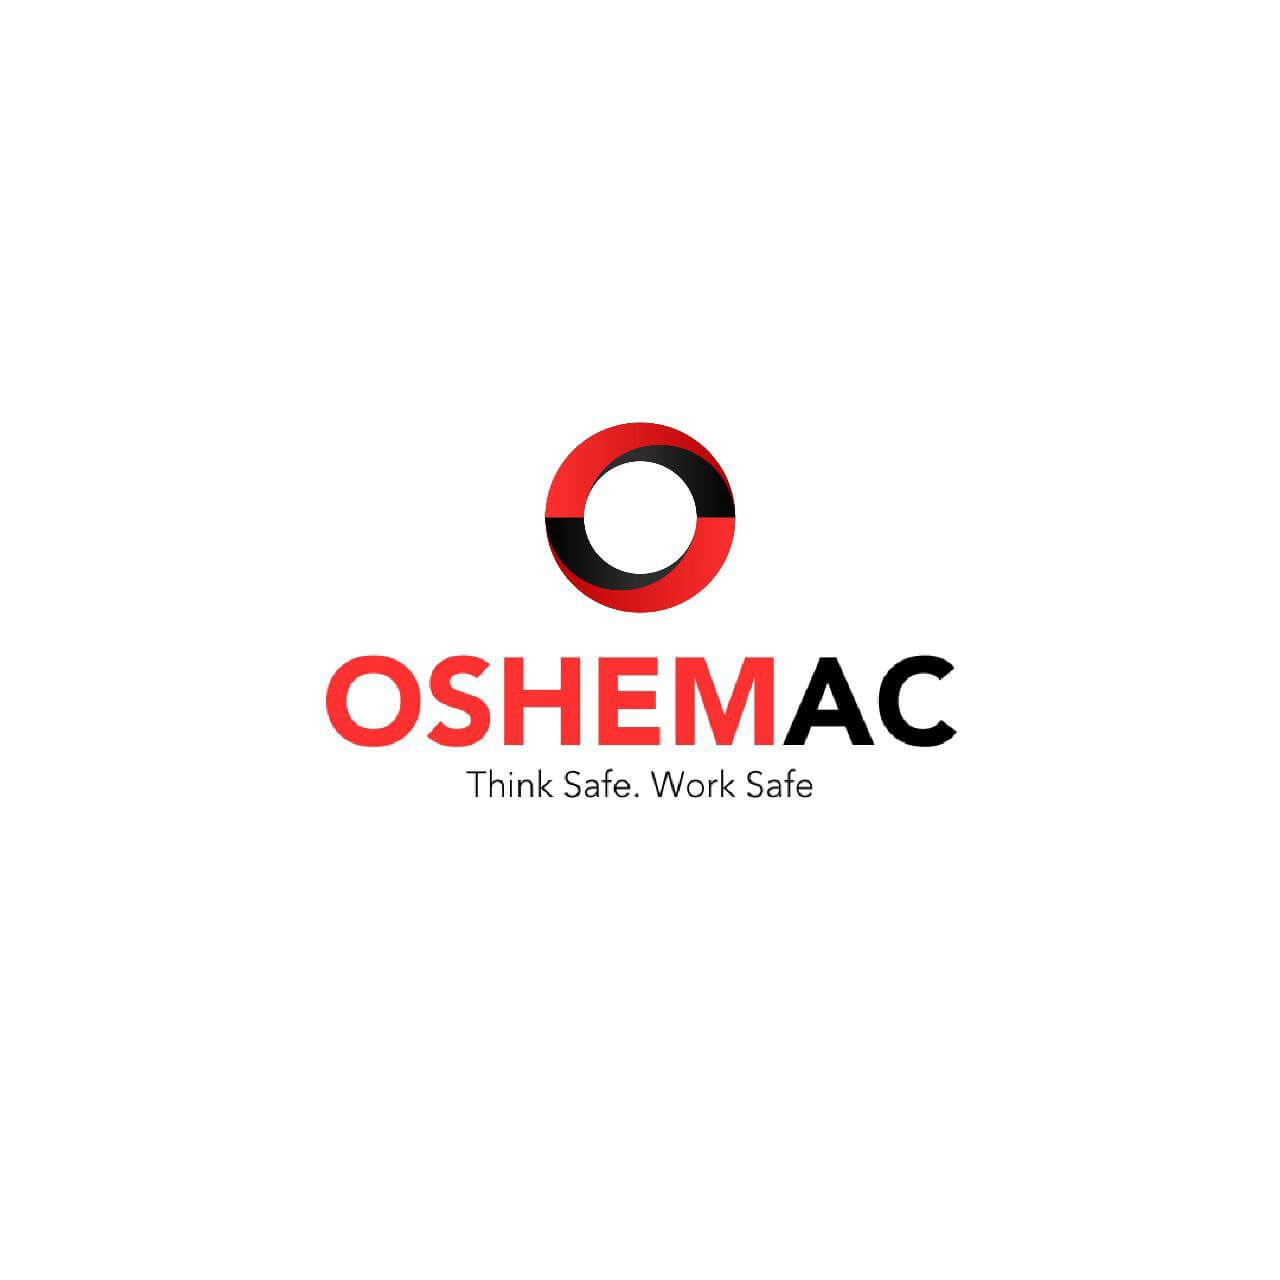 OSHEMAC